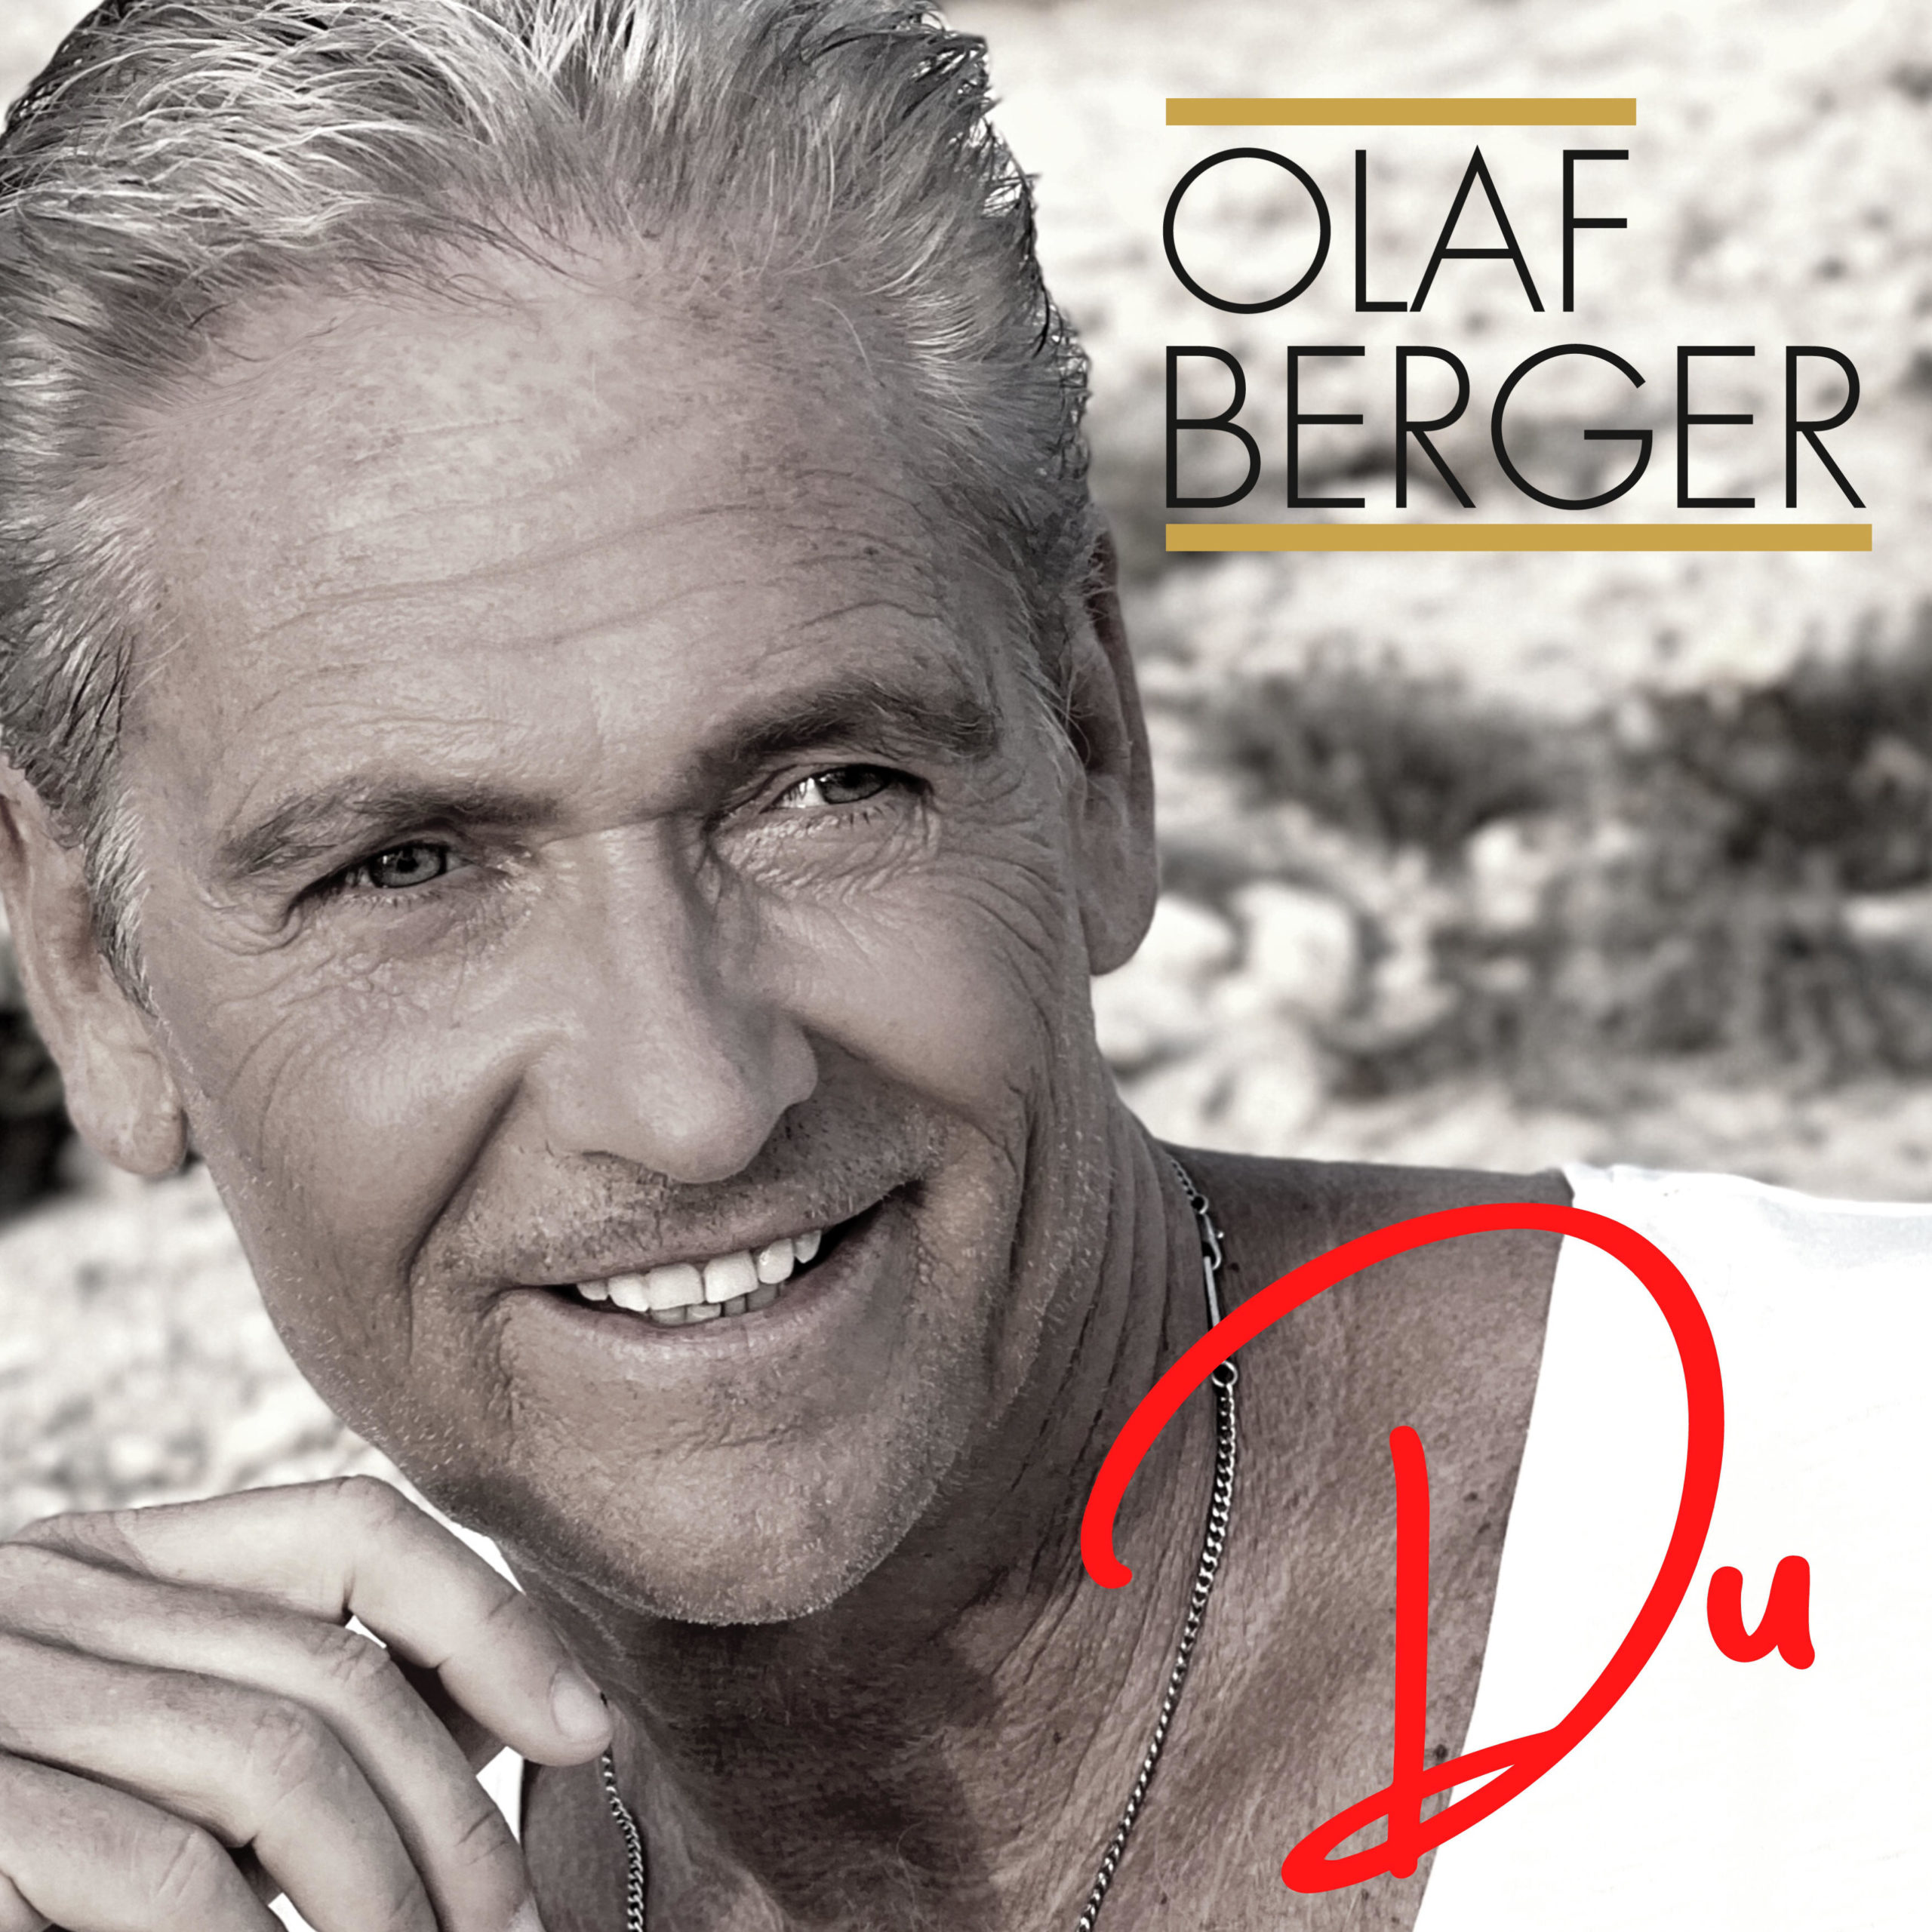 OLAF BERGER * Du (Download-Track) *** Aus dem neuen Album “: „Echt Bergerstark “